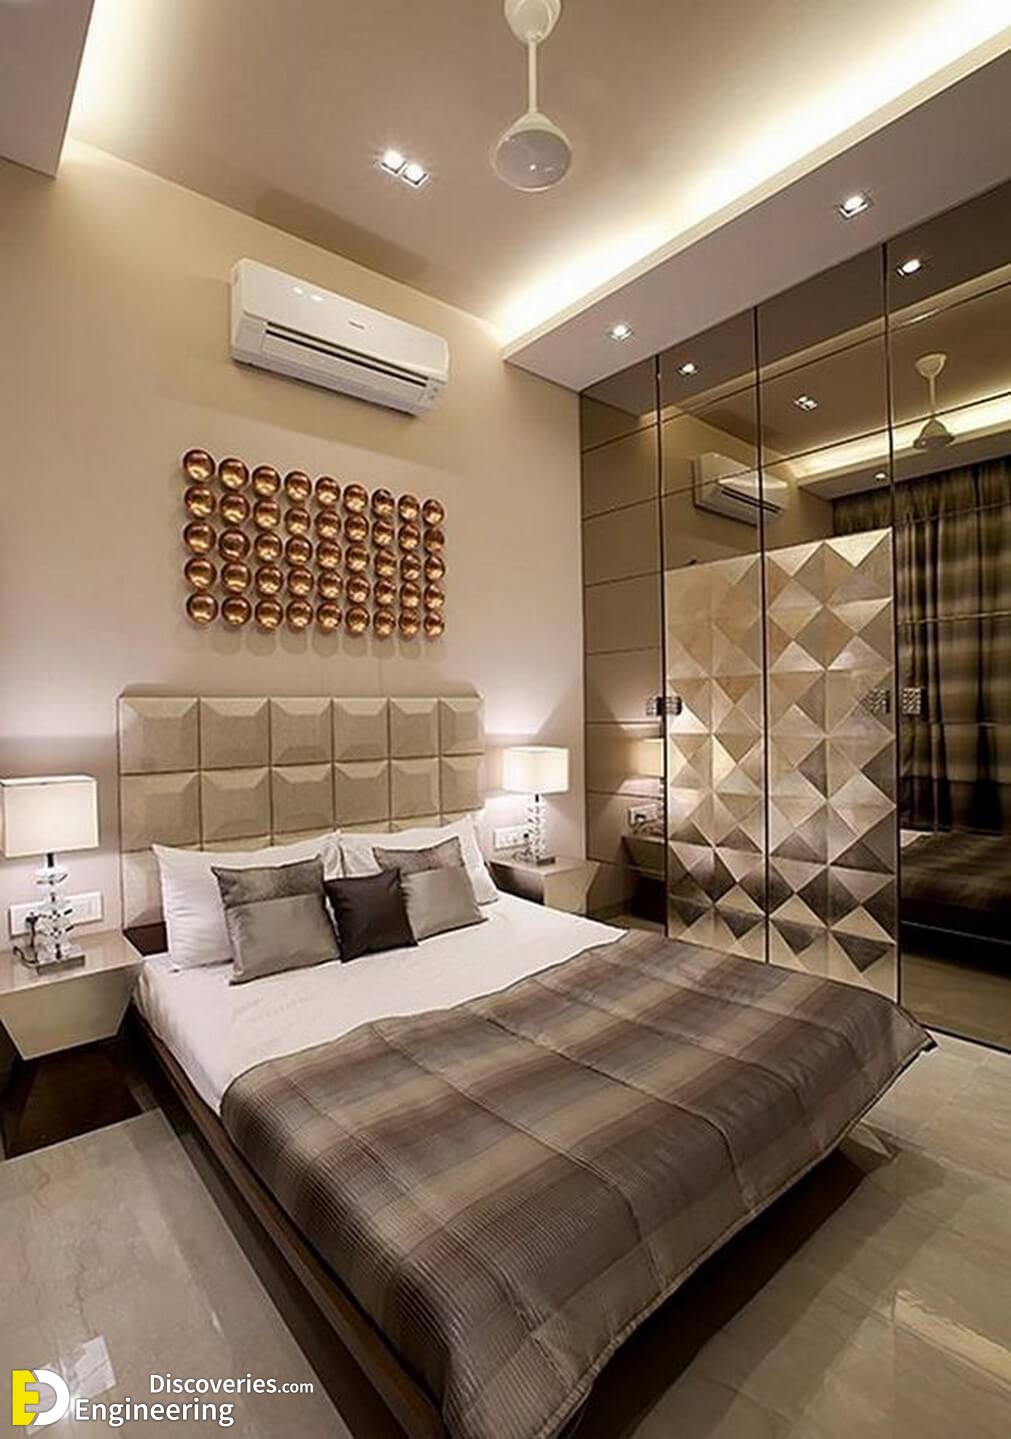 Incredible Modern Bedroom Design Ideas - Engineering ...